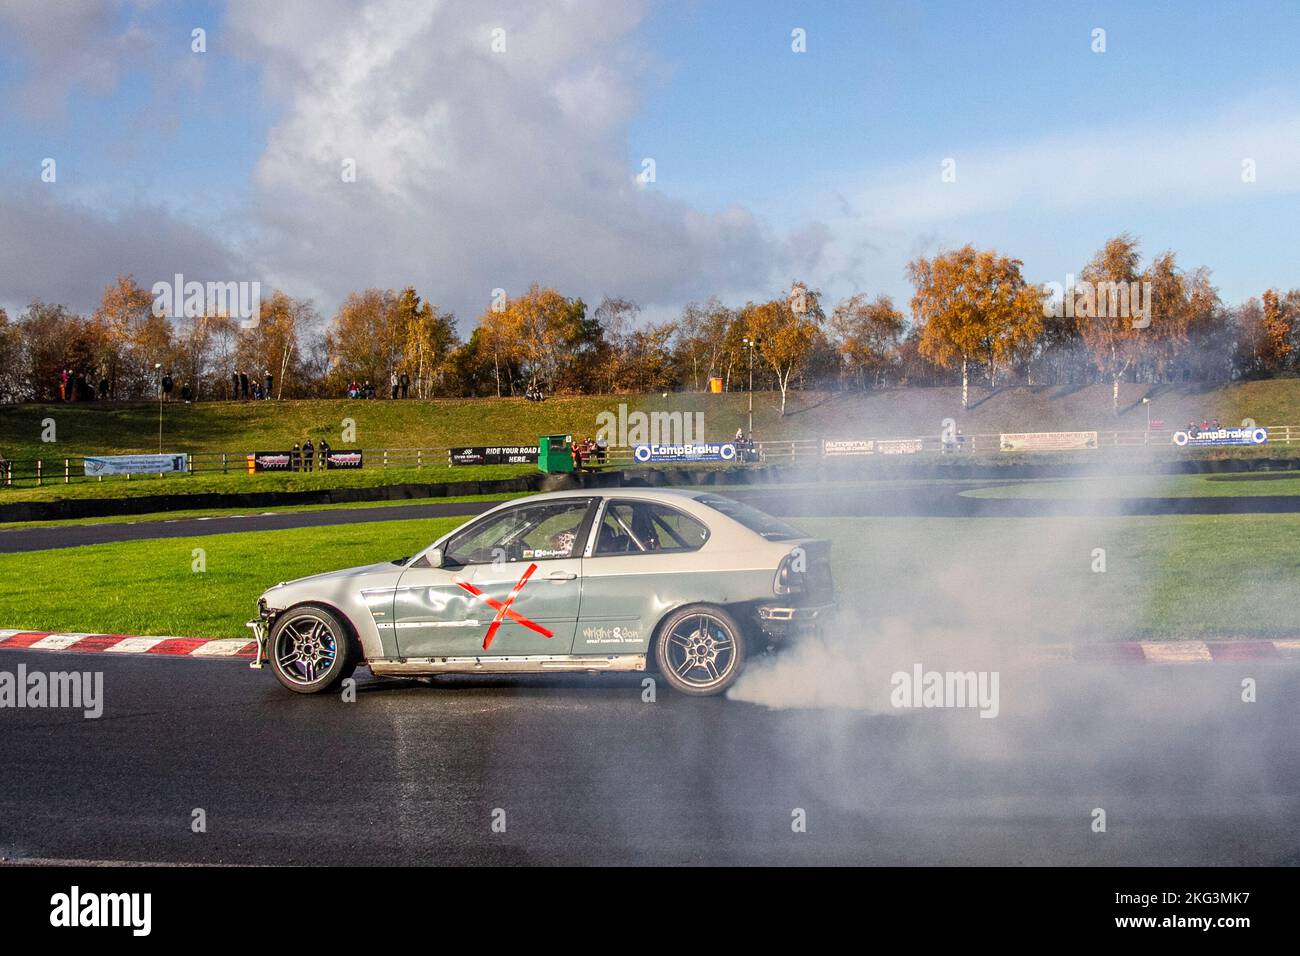 Grauweiß modifizierter BMW der Serie 3; HYC Custom Motorsport; Fahrzeug mit Hinterradantrieb, Fahren auf Drift-Strecken und Hochgeschwindigkeitskurvenfahrten auf nassen Straßen auf einem Three Sisters Drift Day in Wigan, Großbritannien Stockfoto